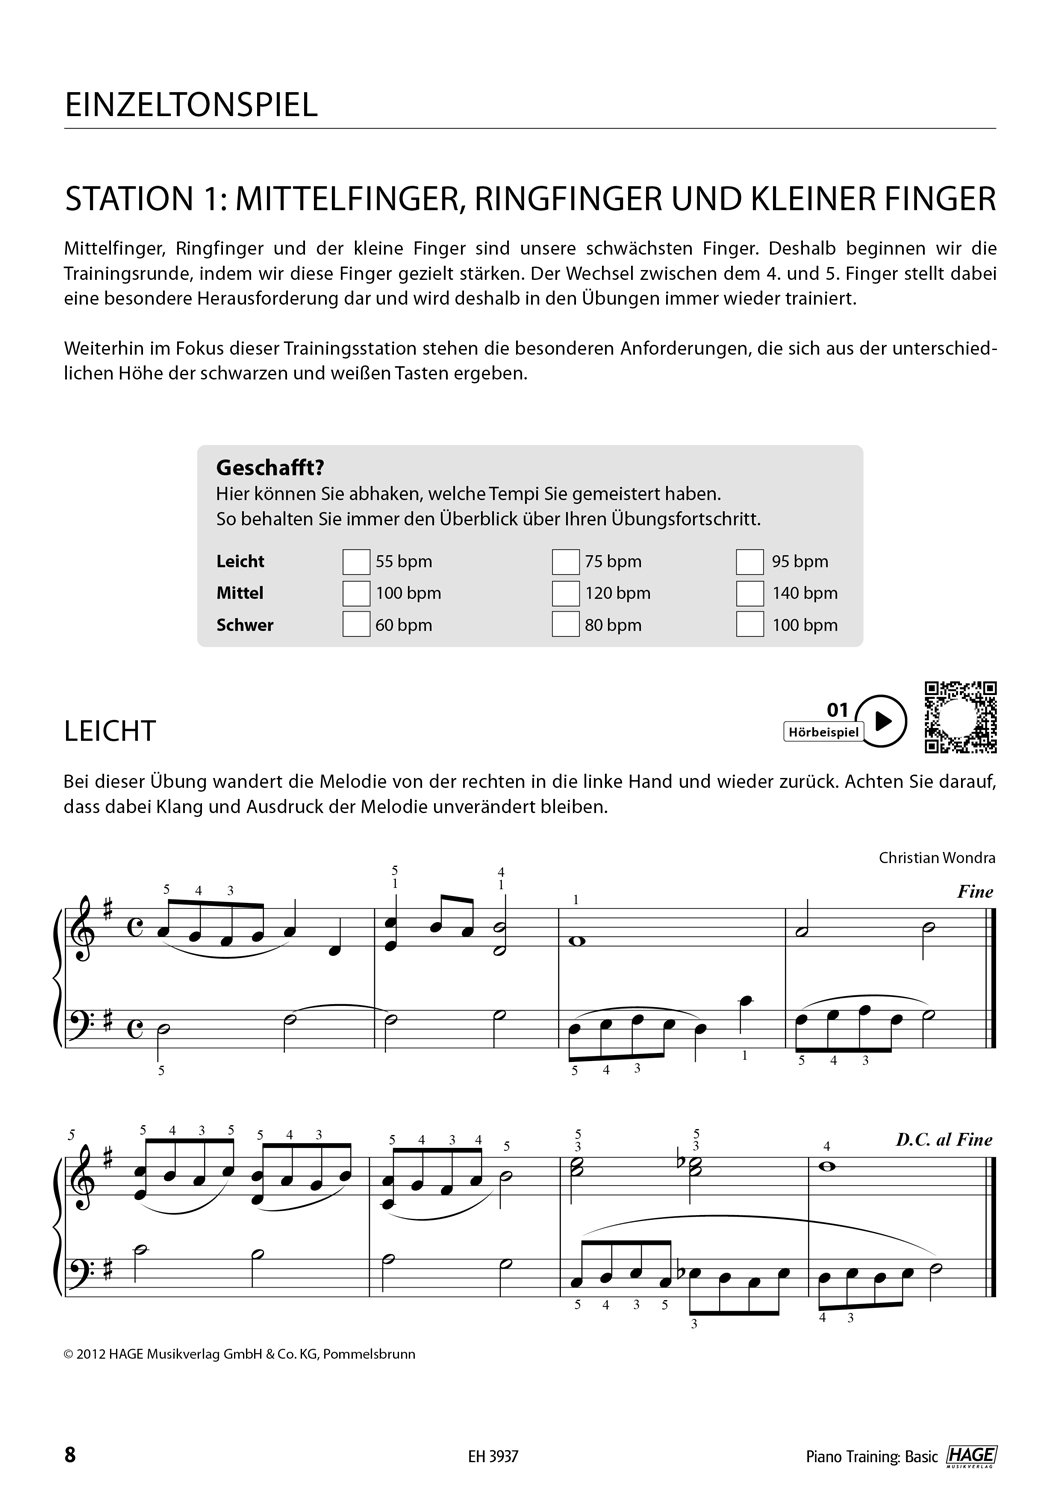 Piano Training Basic Seiten 6